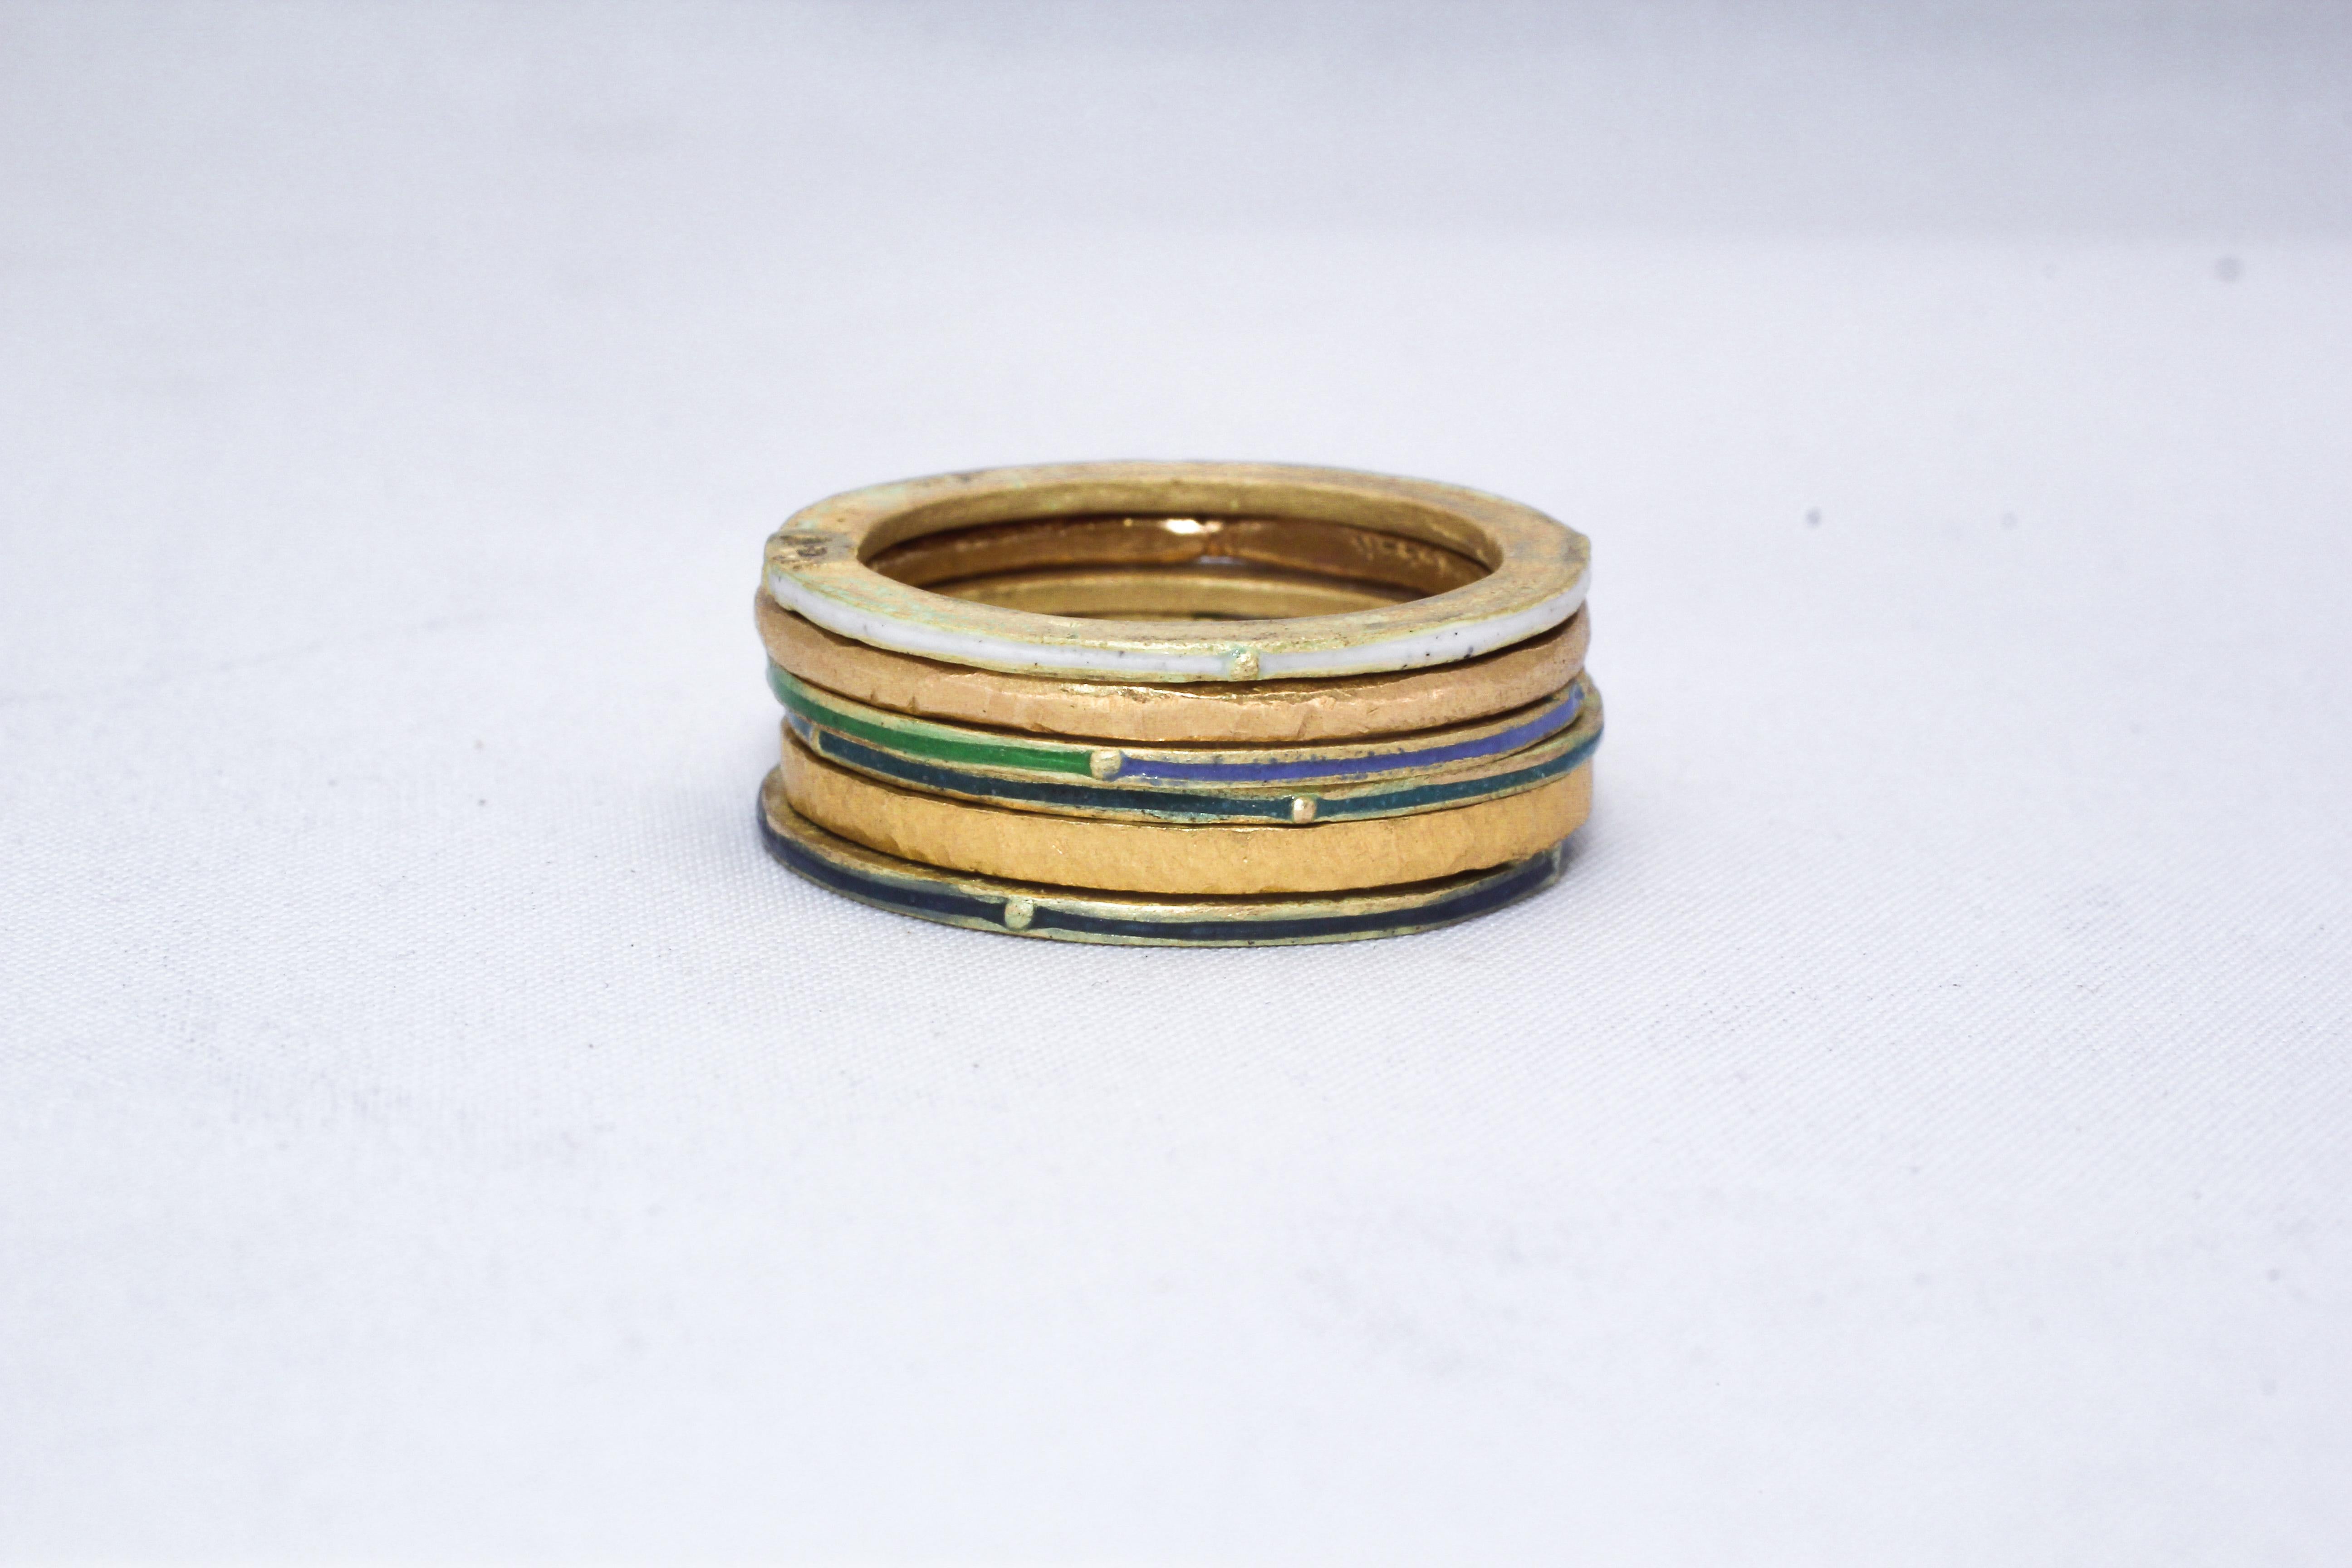 Individuelle Bestellung. 18K und 22K recyceltes Gold und Emaille Hochzeit oder Mode Stapel von Ringen in dieser modernen Kunst-Design. Dieser lebhafte Stapel von 6 Mode- oder Trauringen kombiniert unsere großen und mittleren Ringe aus 22 Karat Gold